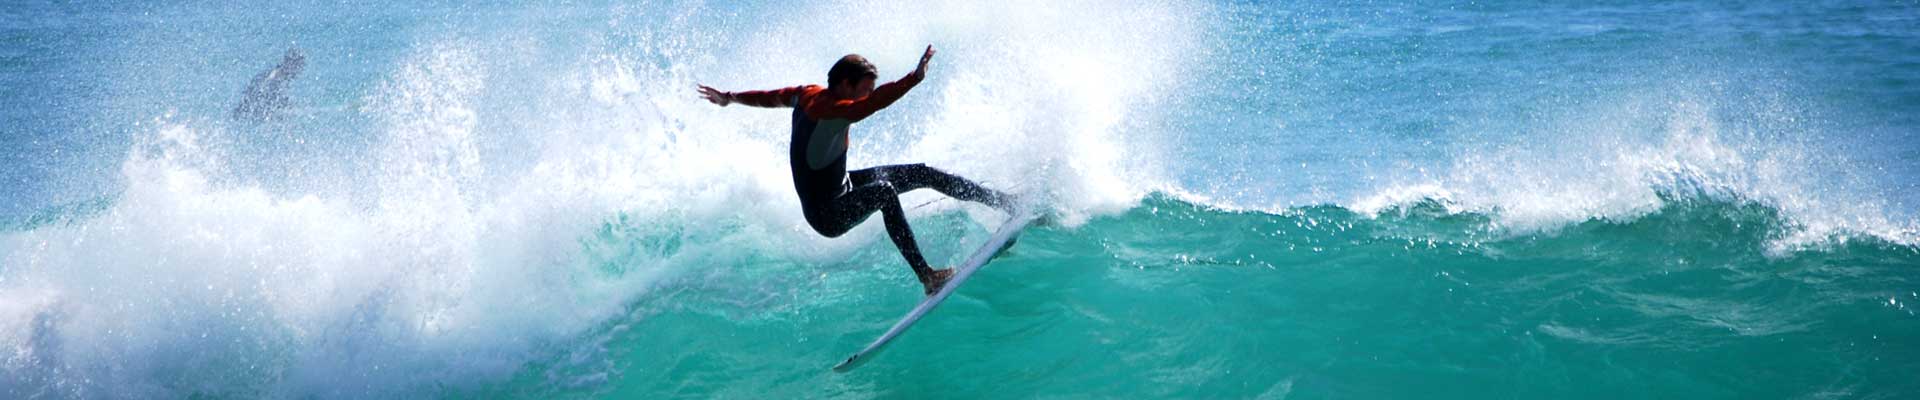 Drop-In-Surfcamp-Portugal-Trenner-Surf-03